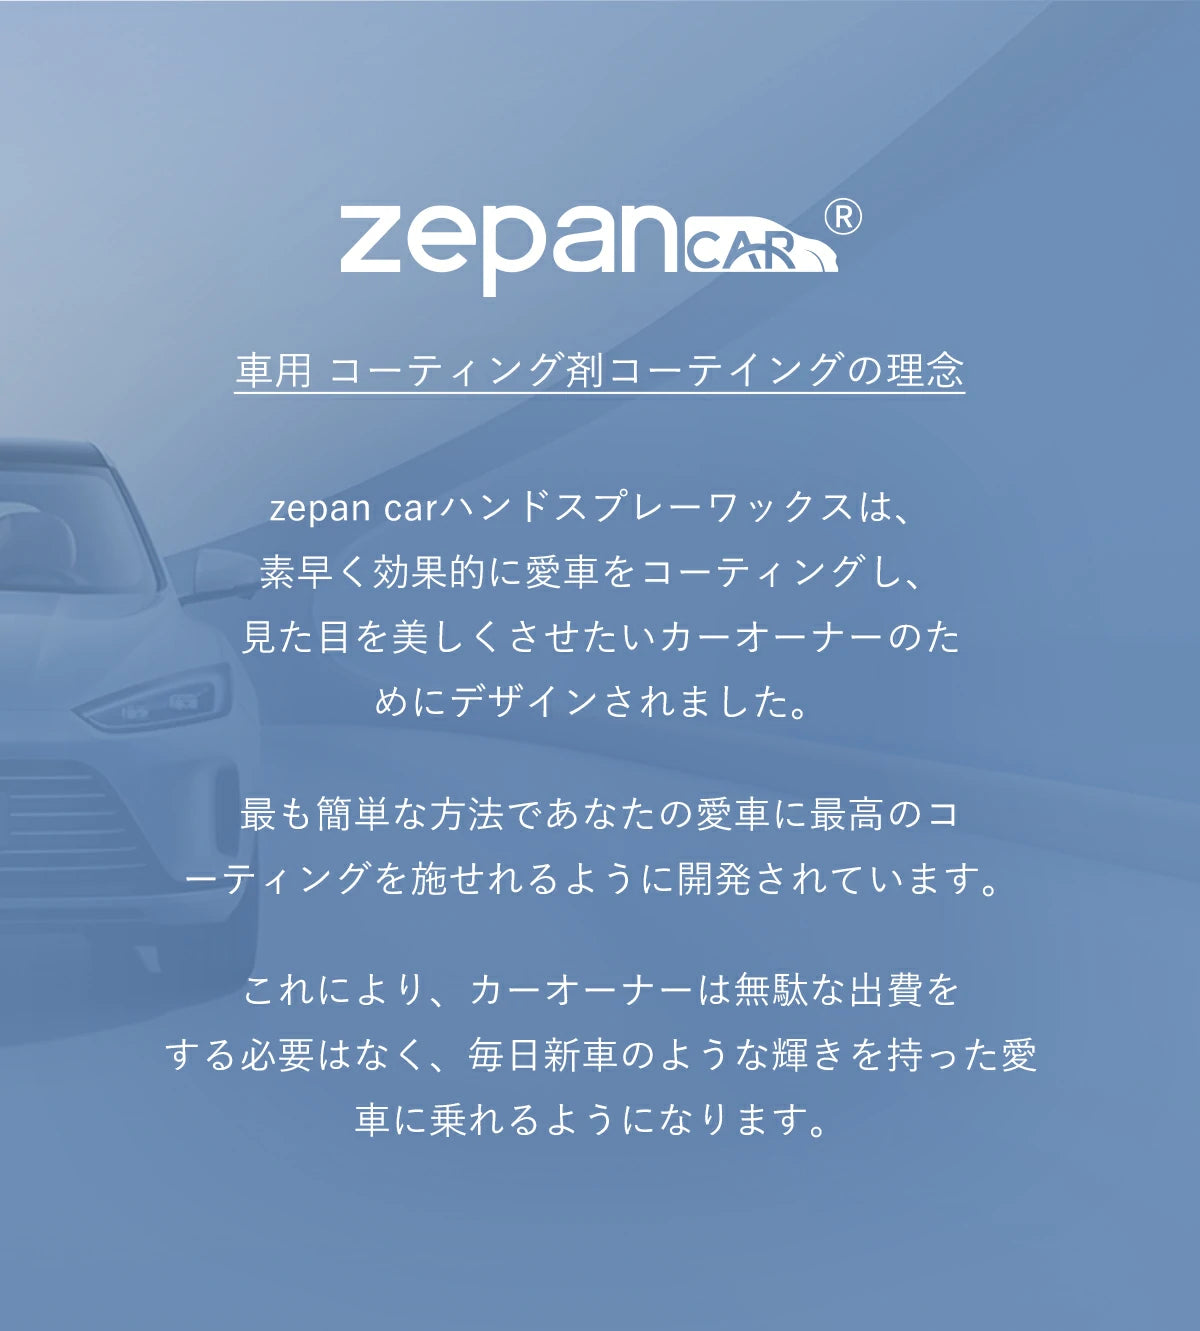 zepan carハンドスプレーワックスは、素早く効果的に愛車をコーティングし、見た目を美しくさせたいカーオーナーのためにデザインされました。最も簡単な方法であなたの愛車に最高のコーティングを施せれるように開発されています。これにより、カーオーナーは無駄な出費をする必要はなく、毎日新車のような輝きを持った愛車に乗れるようになります。